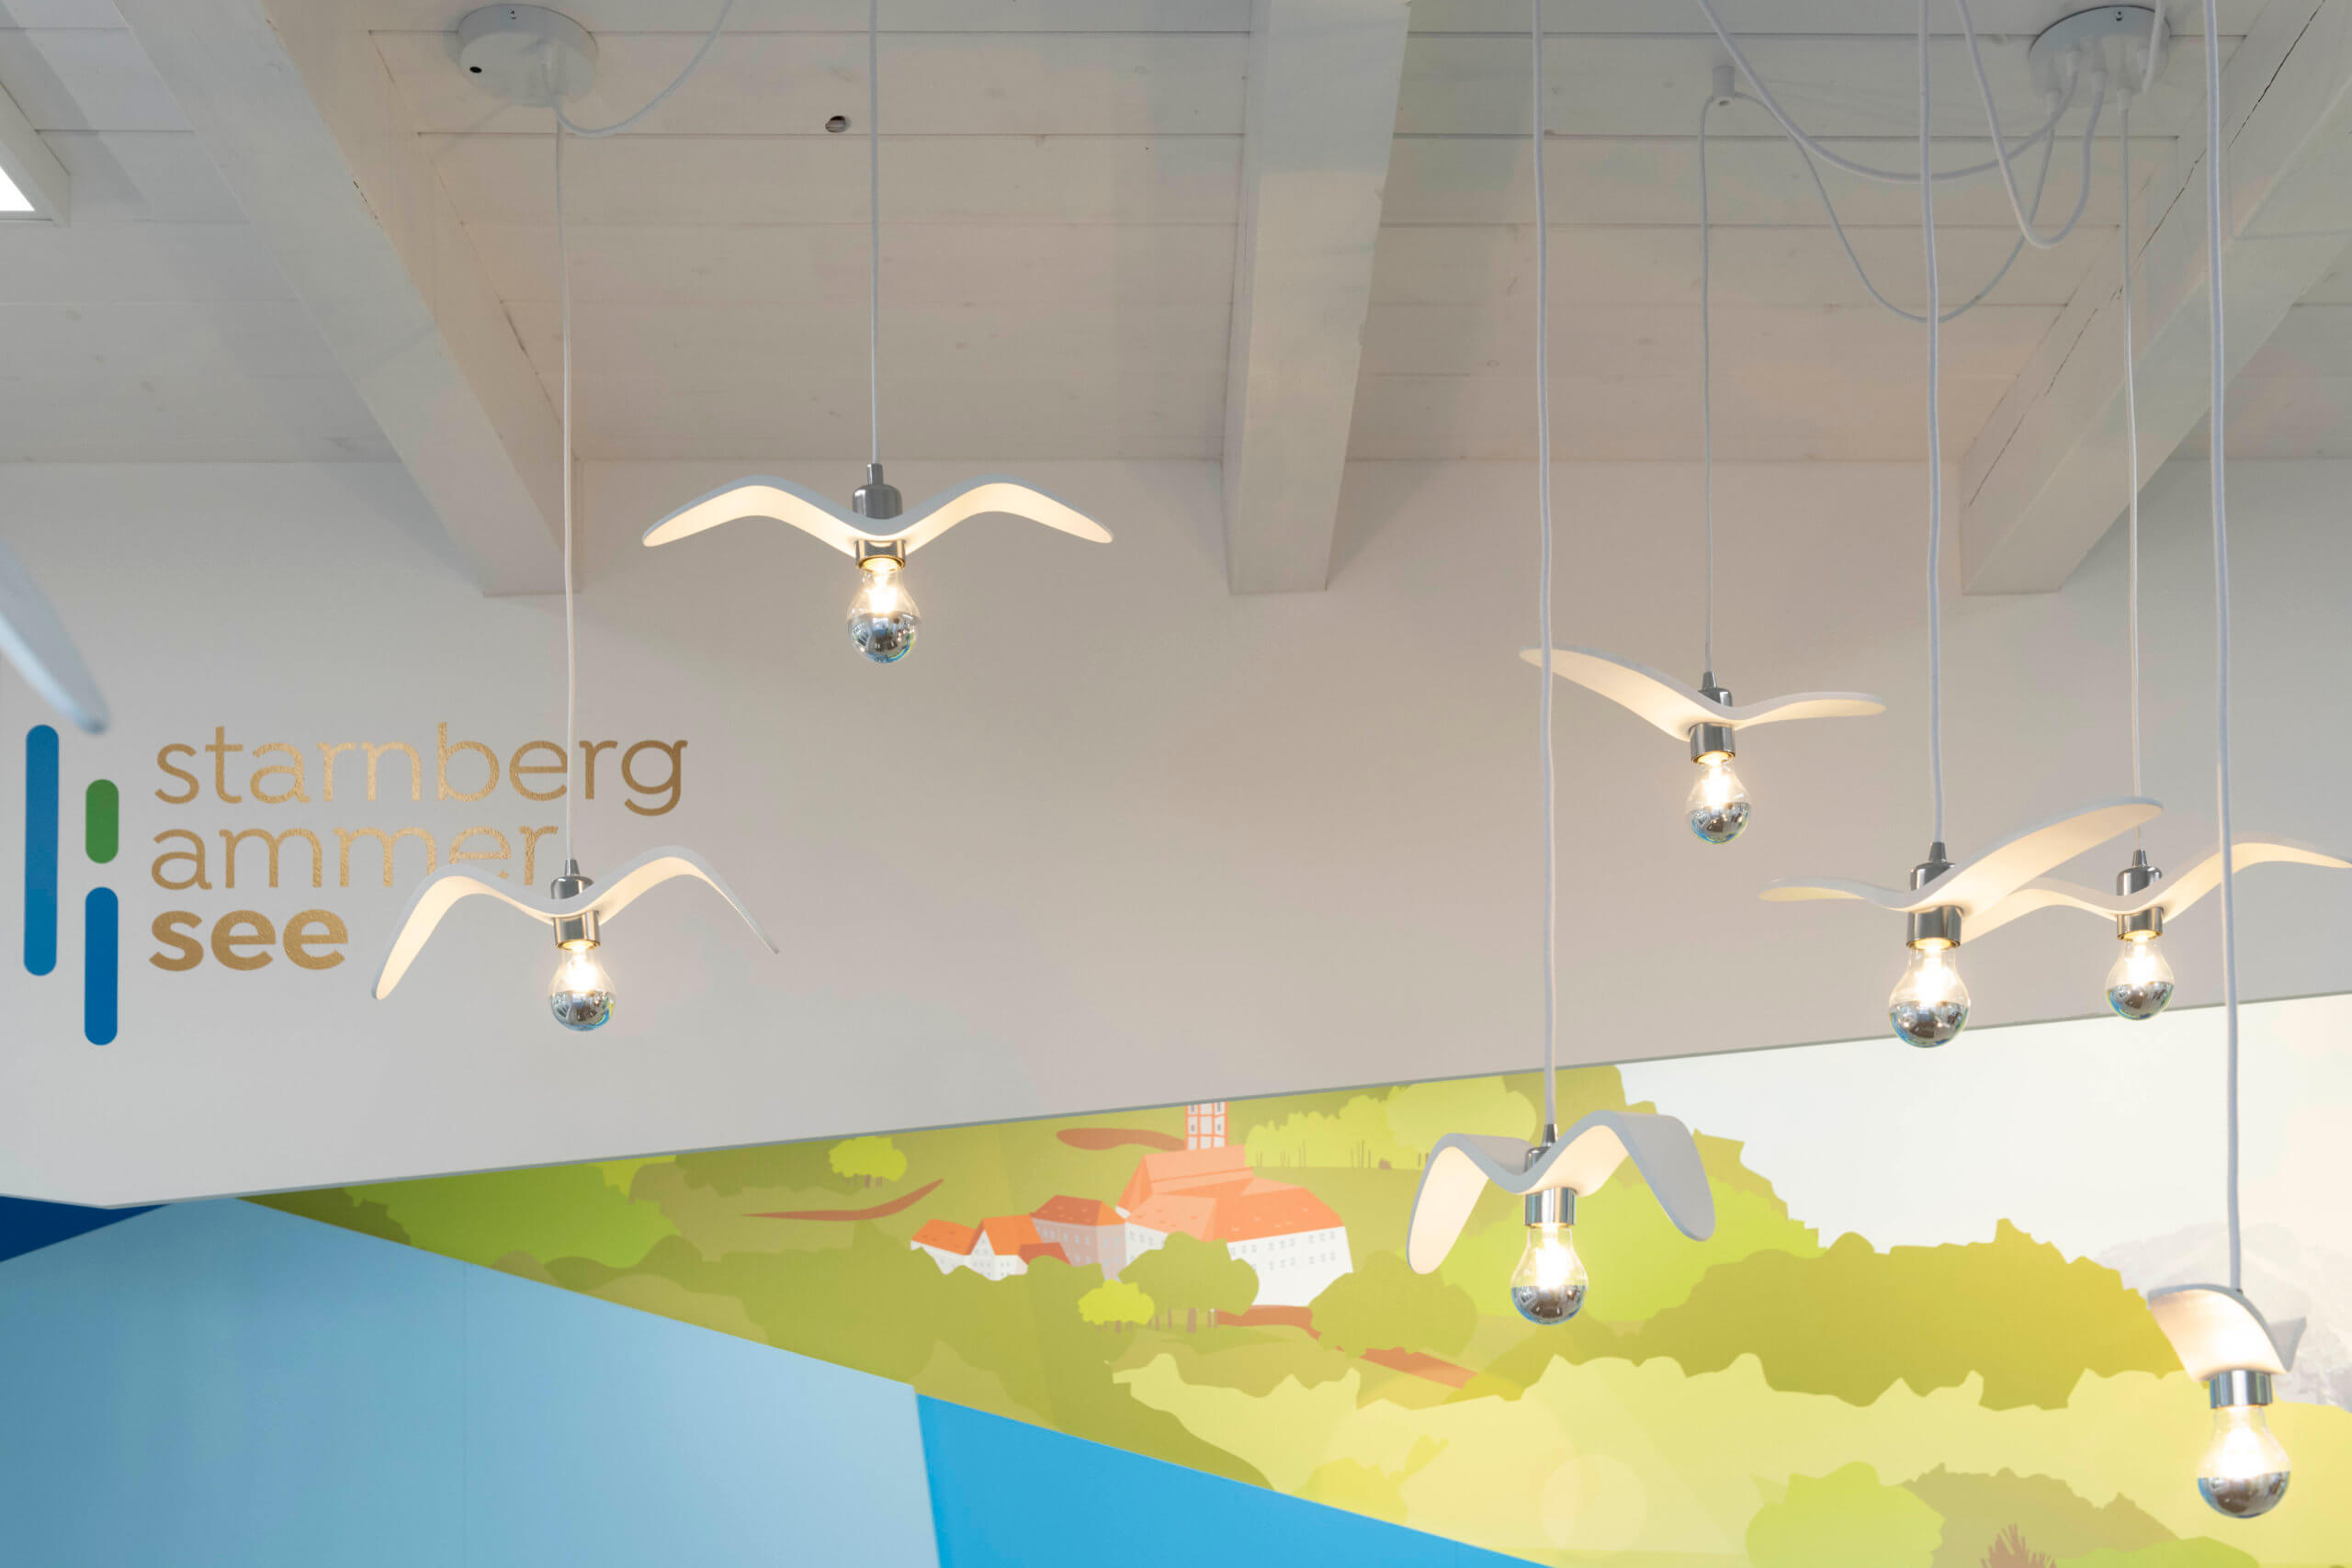 Das Bild zeigt die Deckenlampen der Touristeninformation in Herrsching am Ammersee. Die Lampen sind in ihrer Form den Seemöven nachempfunden.